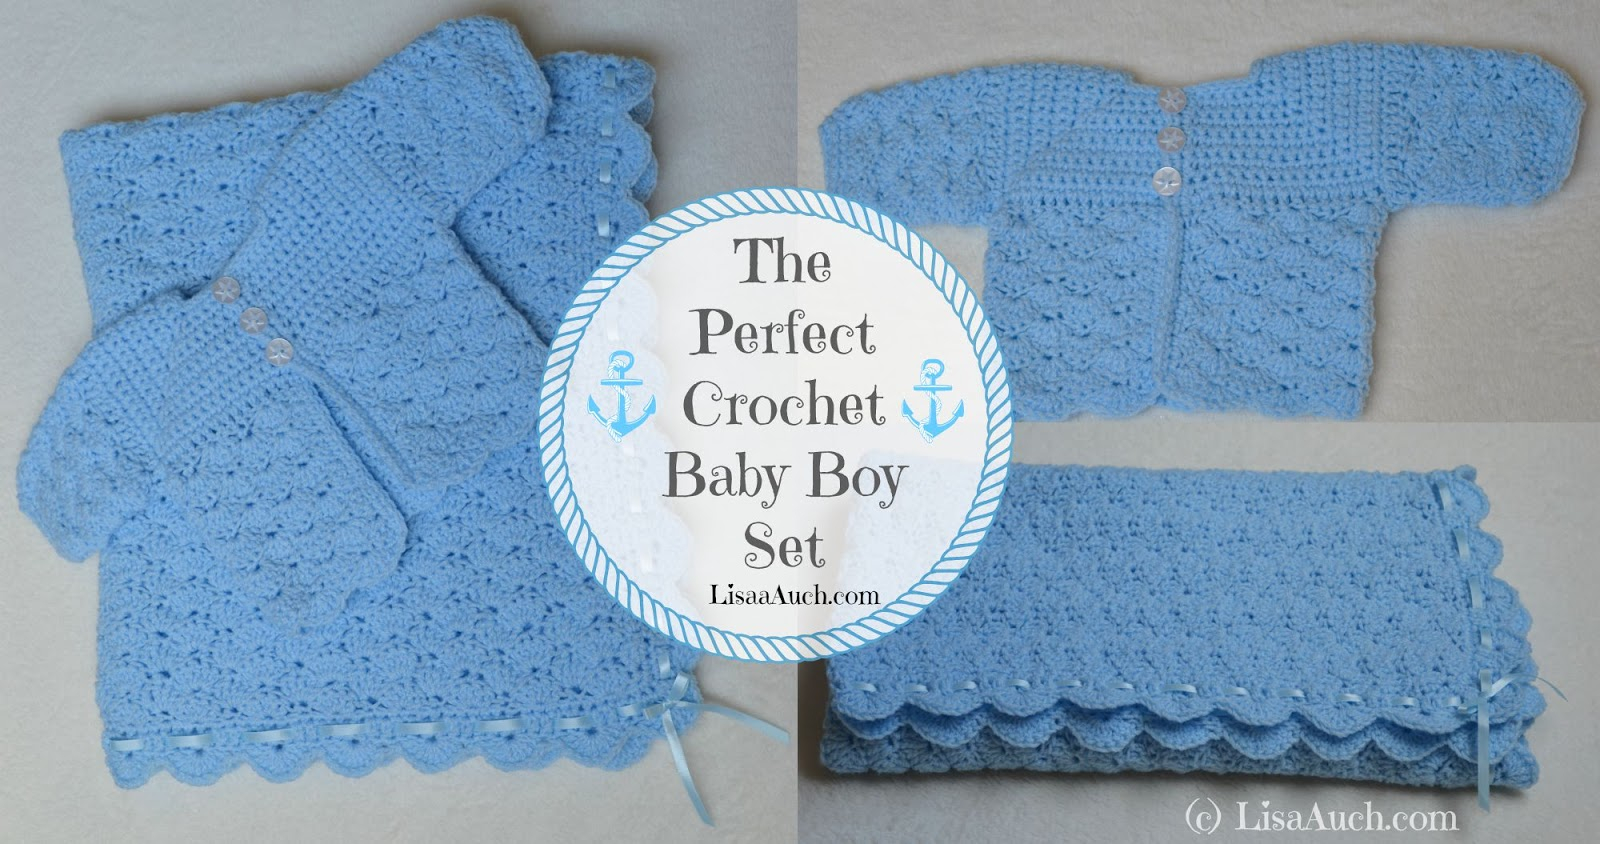 Crochet Newborn Sweater Pattern Free Crochet Patterns And Designs Lisaauch Free Crochet Patterns